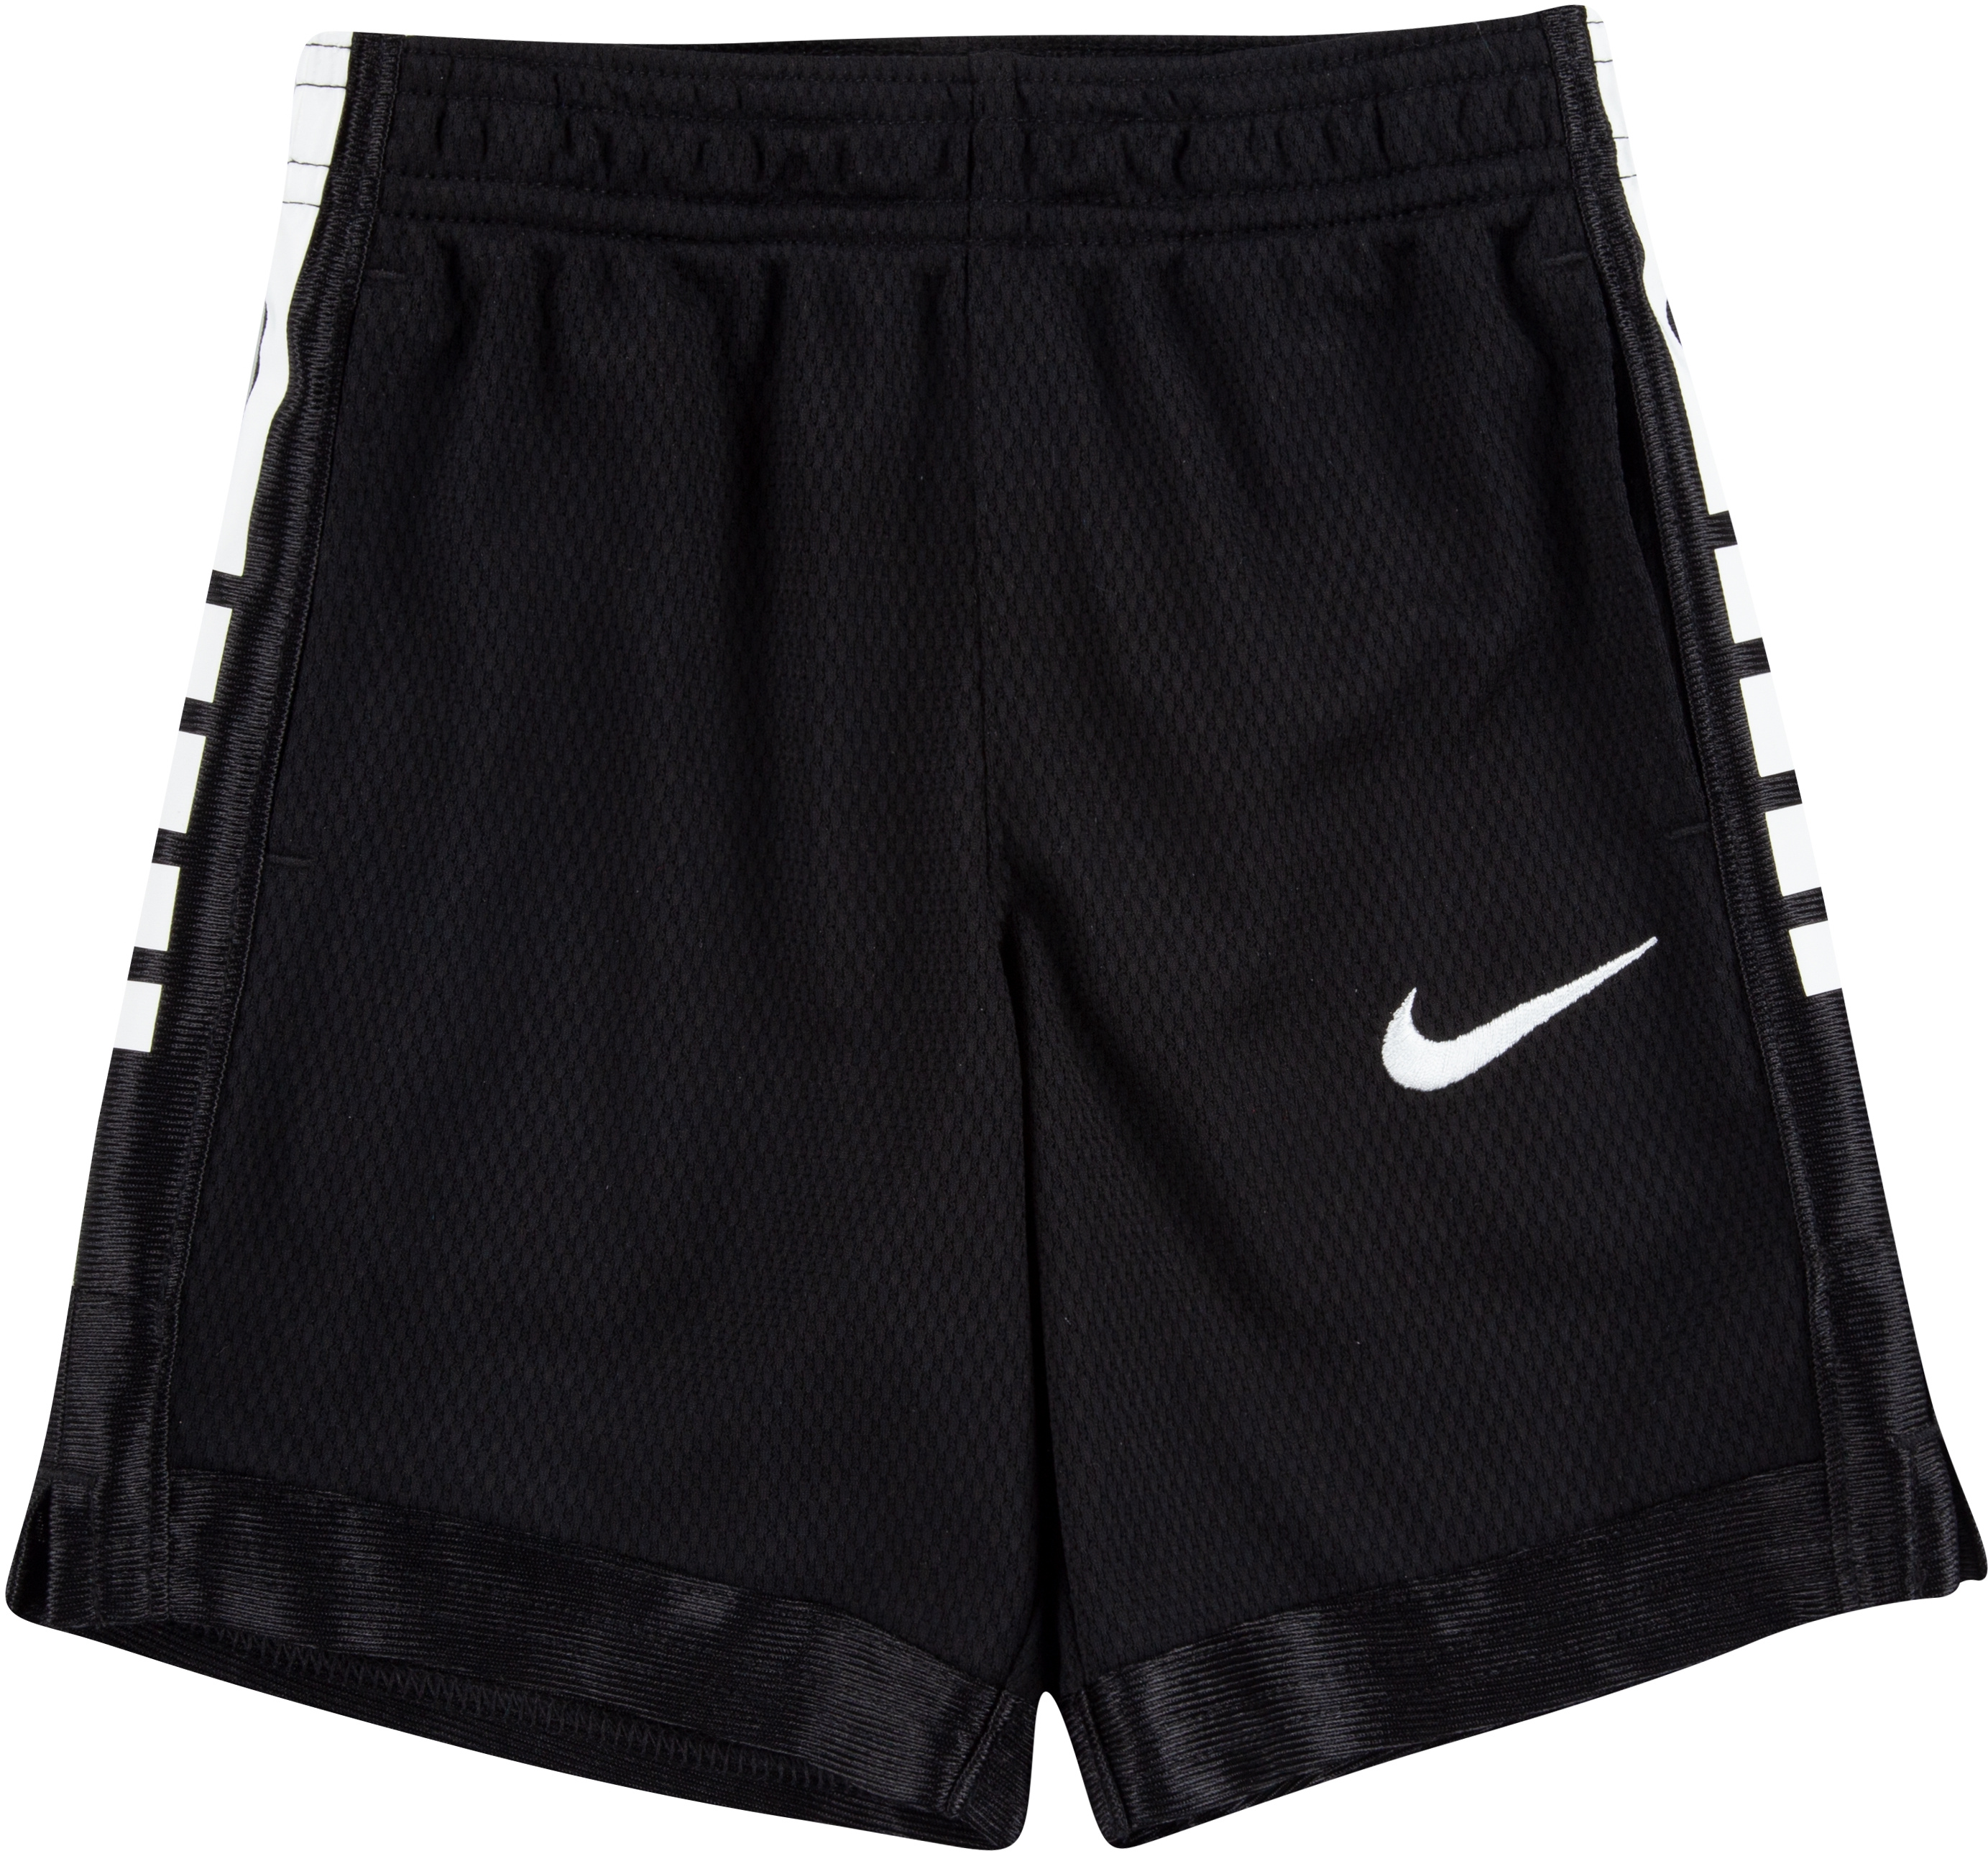 Баскетбольные шорты Dri-FIT Elite (для малышей) Nike Kids